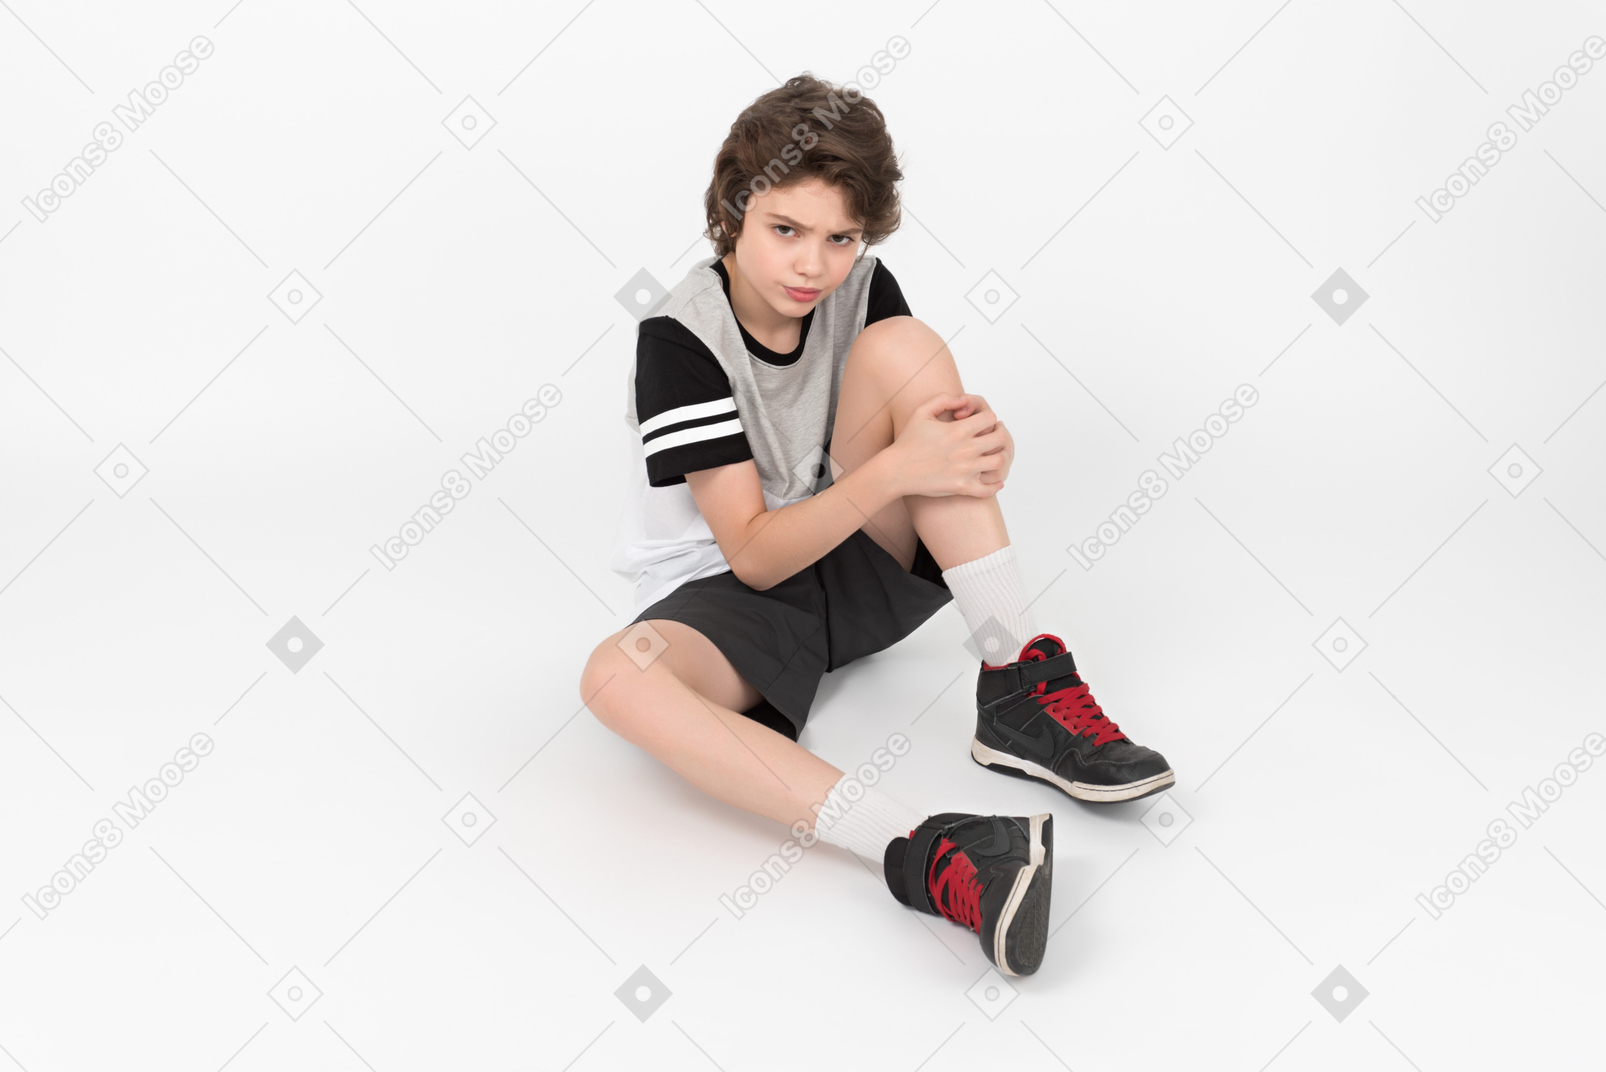 Chico atlético gruñón está sentado en el suelo y tocando su pierna